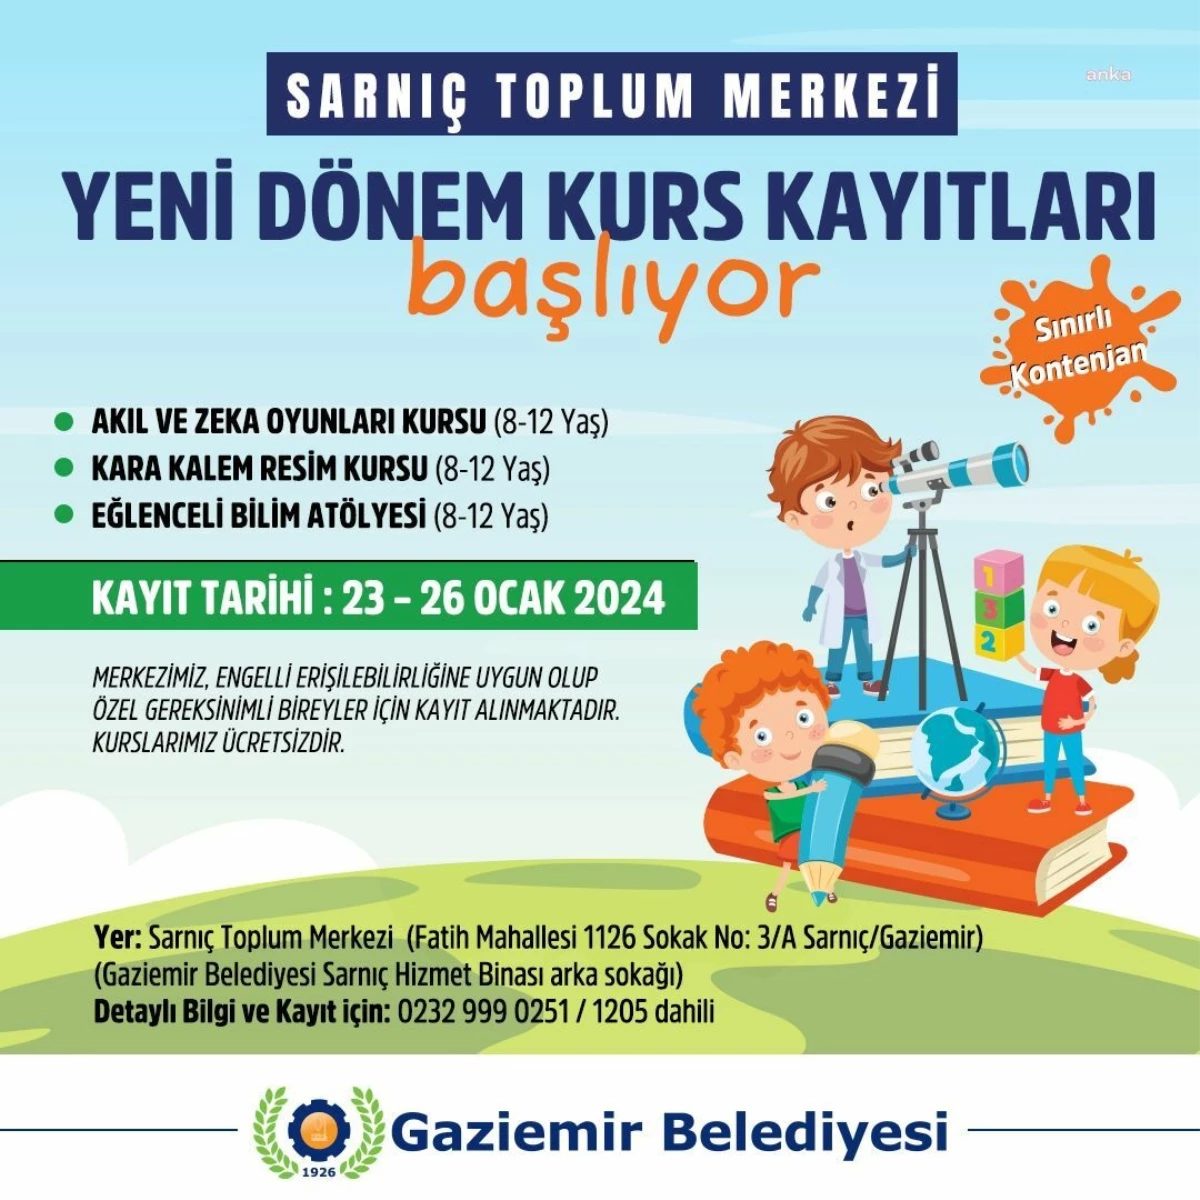 Gaziemir Belediyesi Sarnıç Toplum Merkezi\'nde çocuklar için akıl ve zeka oyunları, karakalem resim kursu ve bilim atölyesi düzenliyor